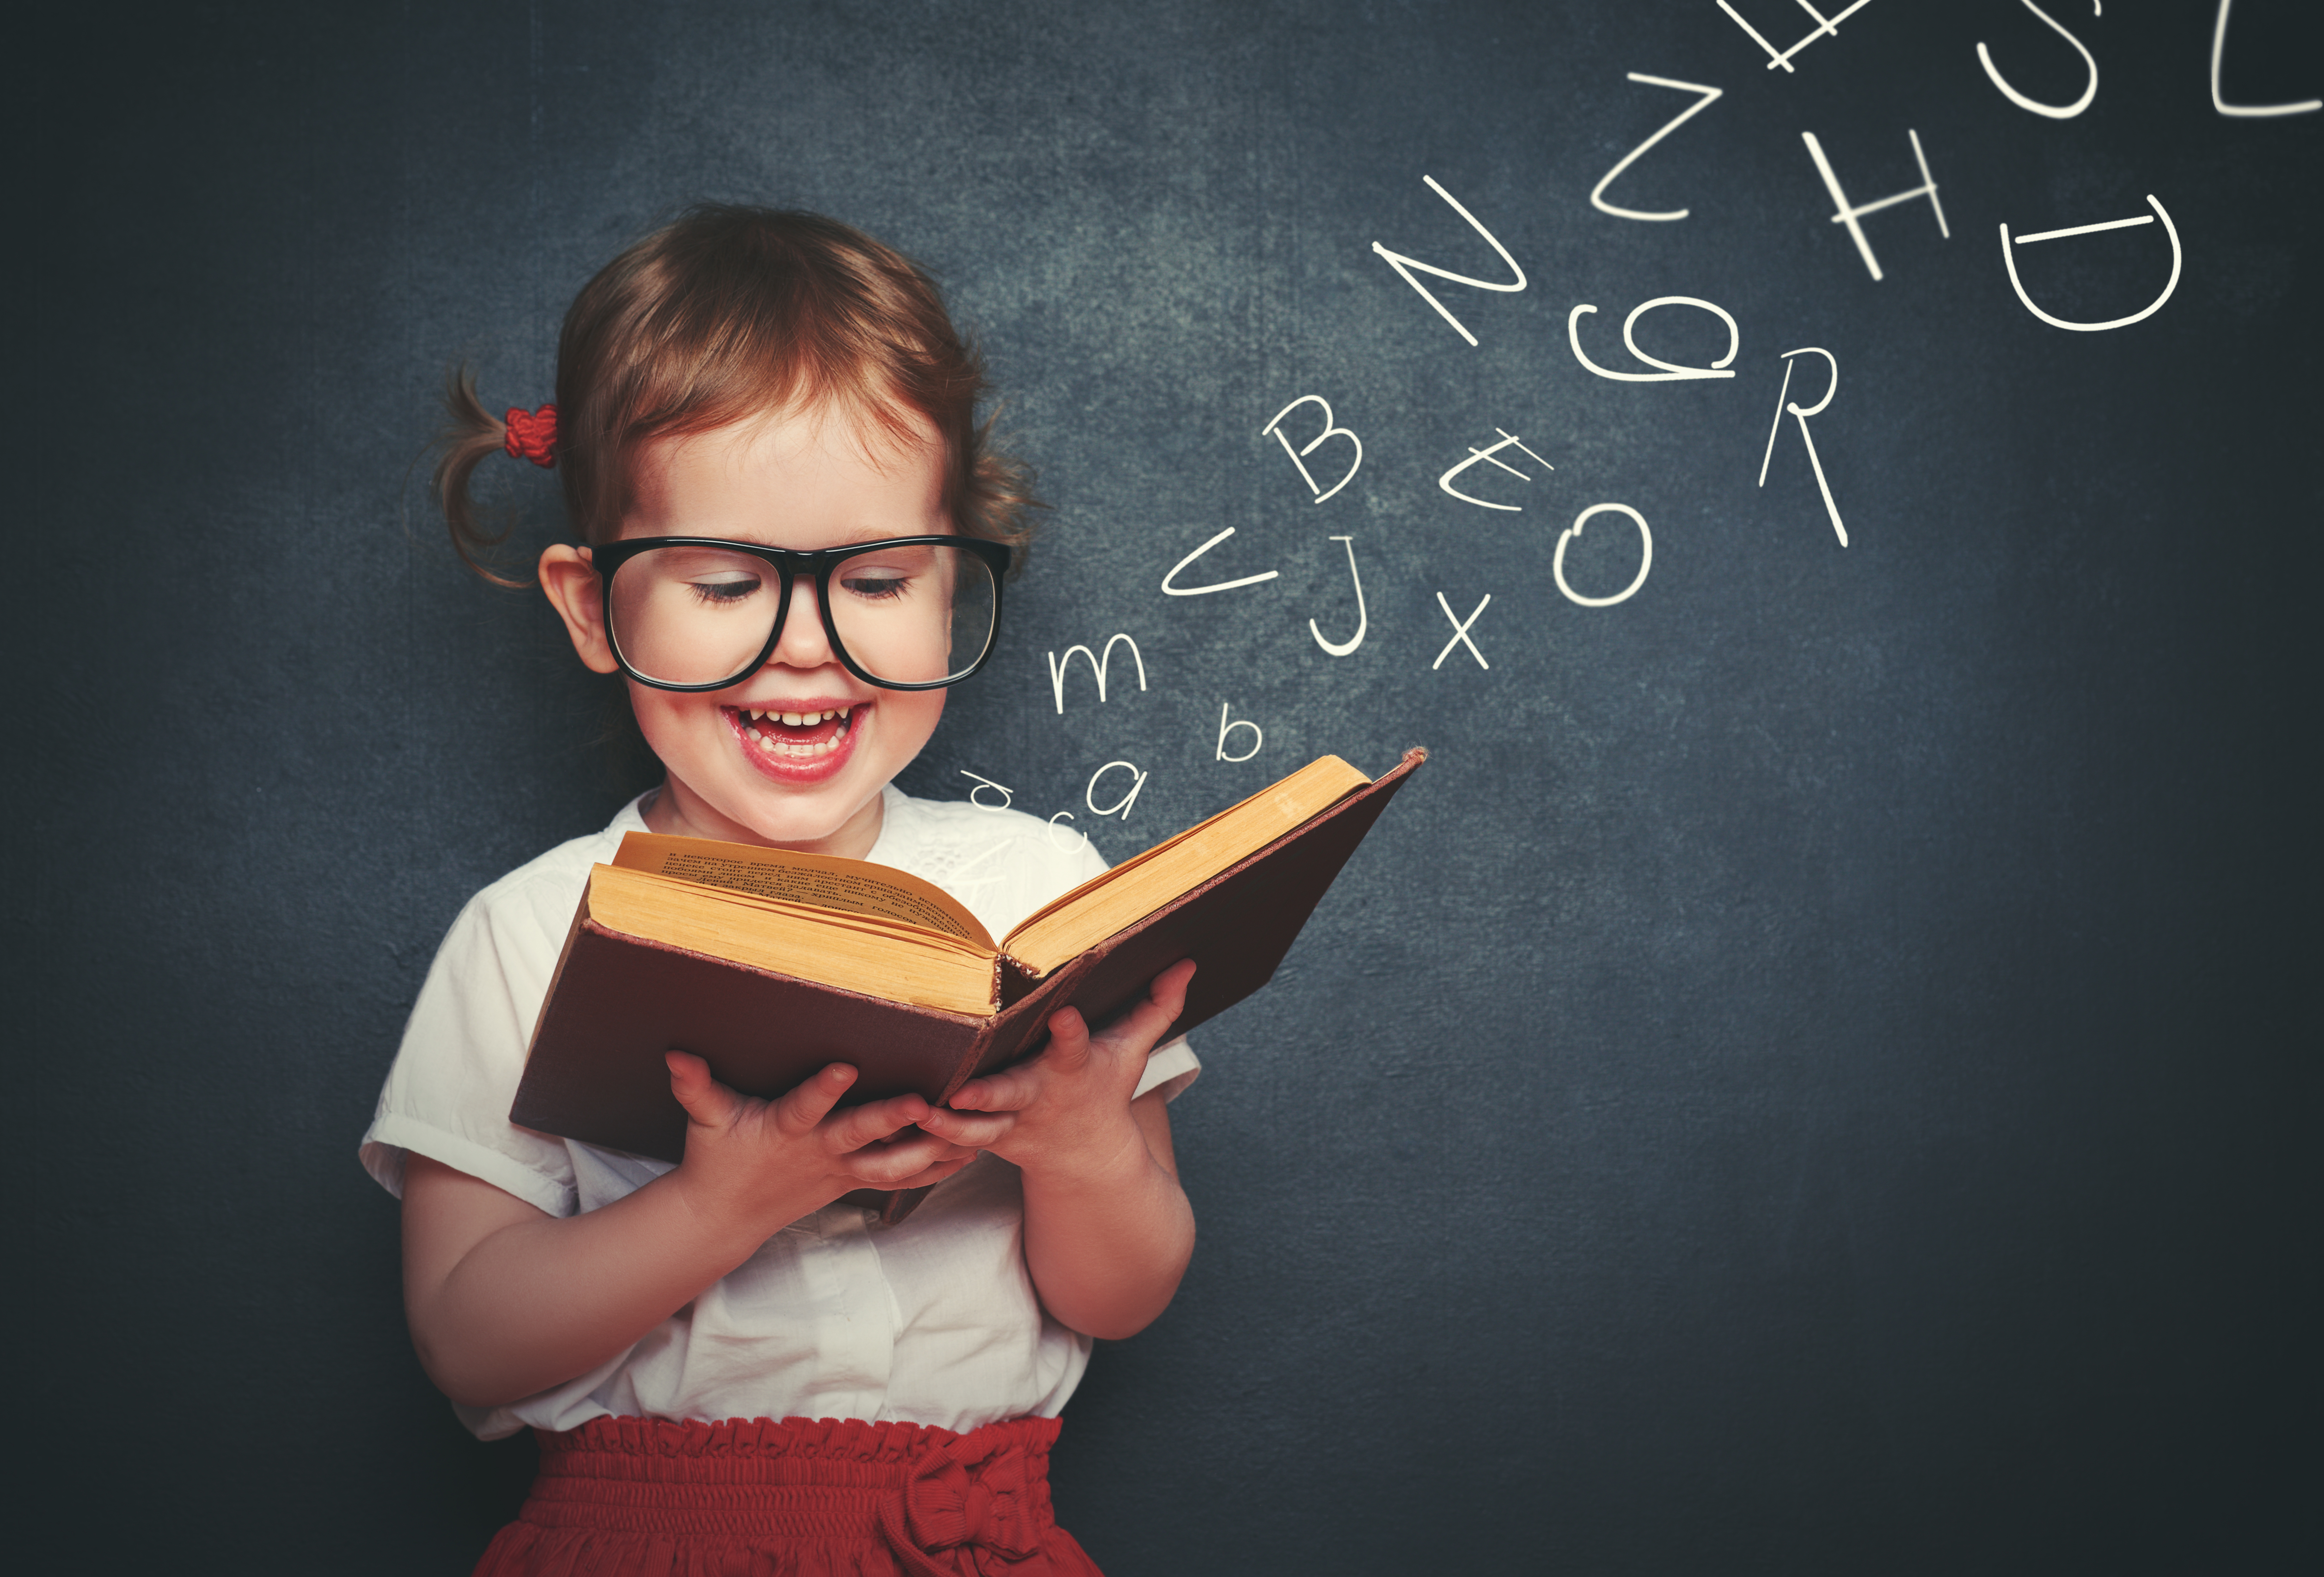 La literatura es una herramienta que puede influir en el empoderamiento de las niñas. (Foto Prensa Libre: Shutterstock)